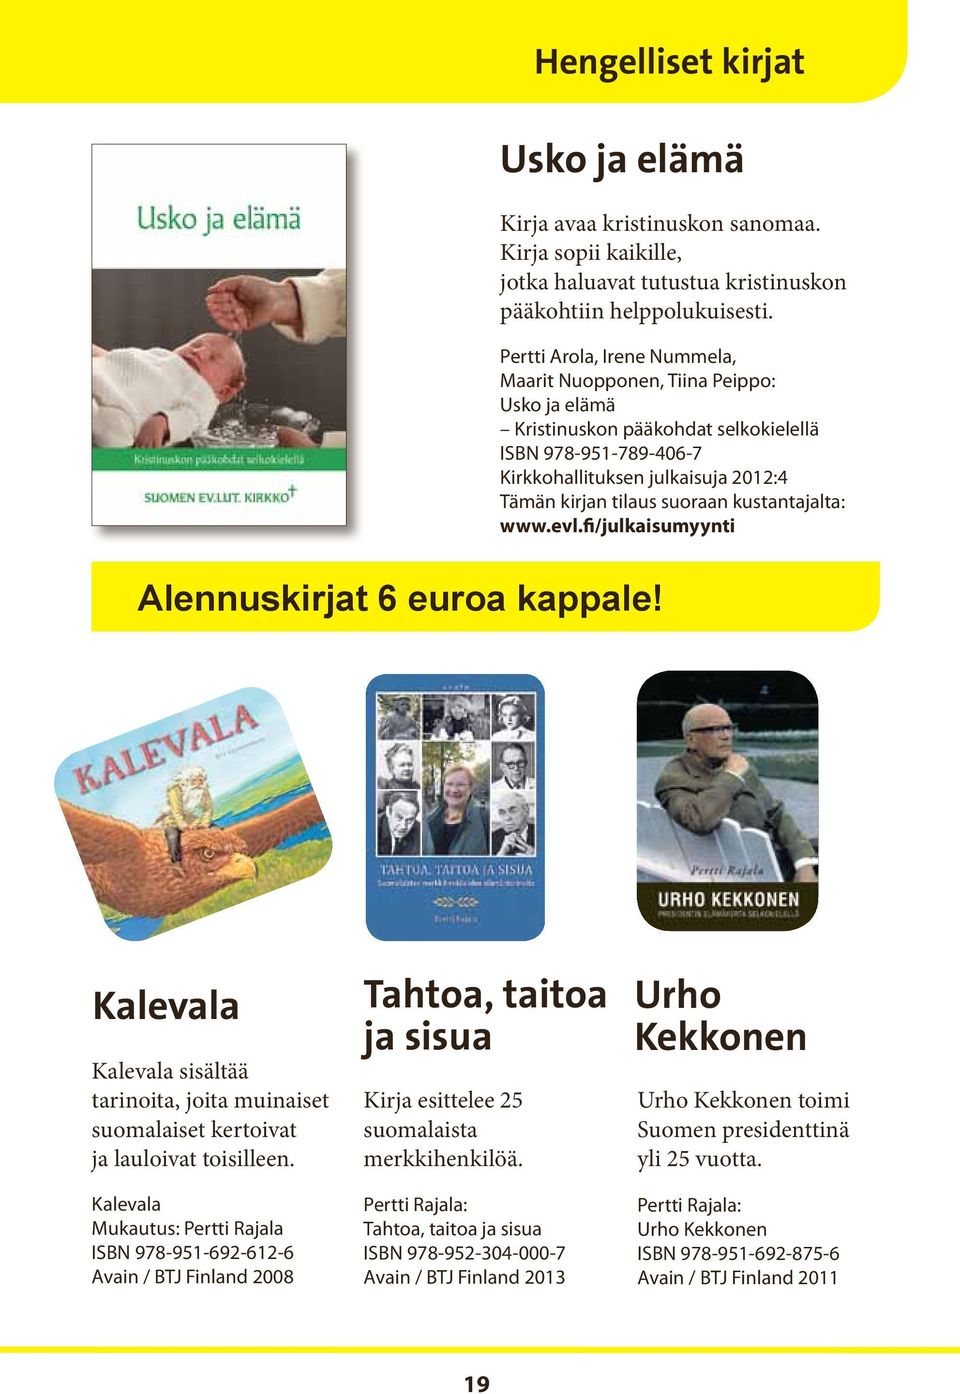 kustantajalta: www.evl.fi/julkaisumyynti Alennuskirjat 6 euroa kappale! Kalevala Kalevala sisältää tarinoita, joita muinaiset suomalaiset kertoivat ja lauloivat toisilleen.